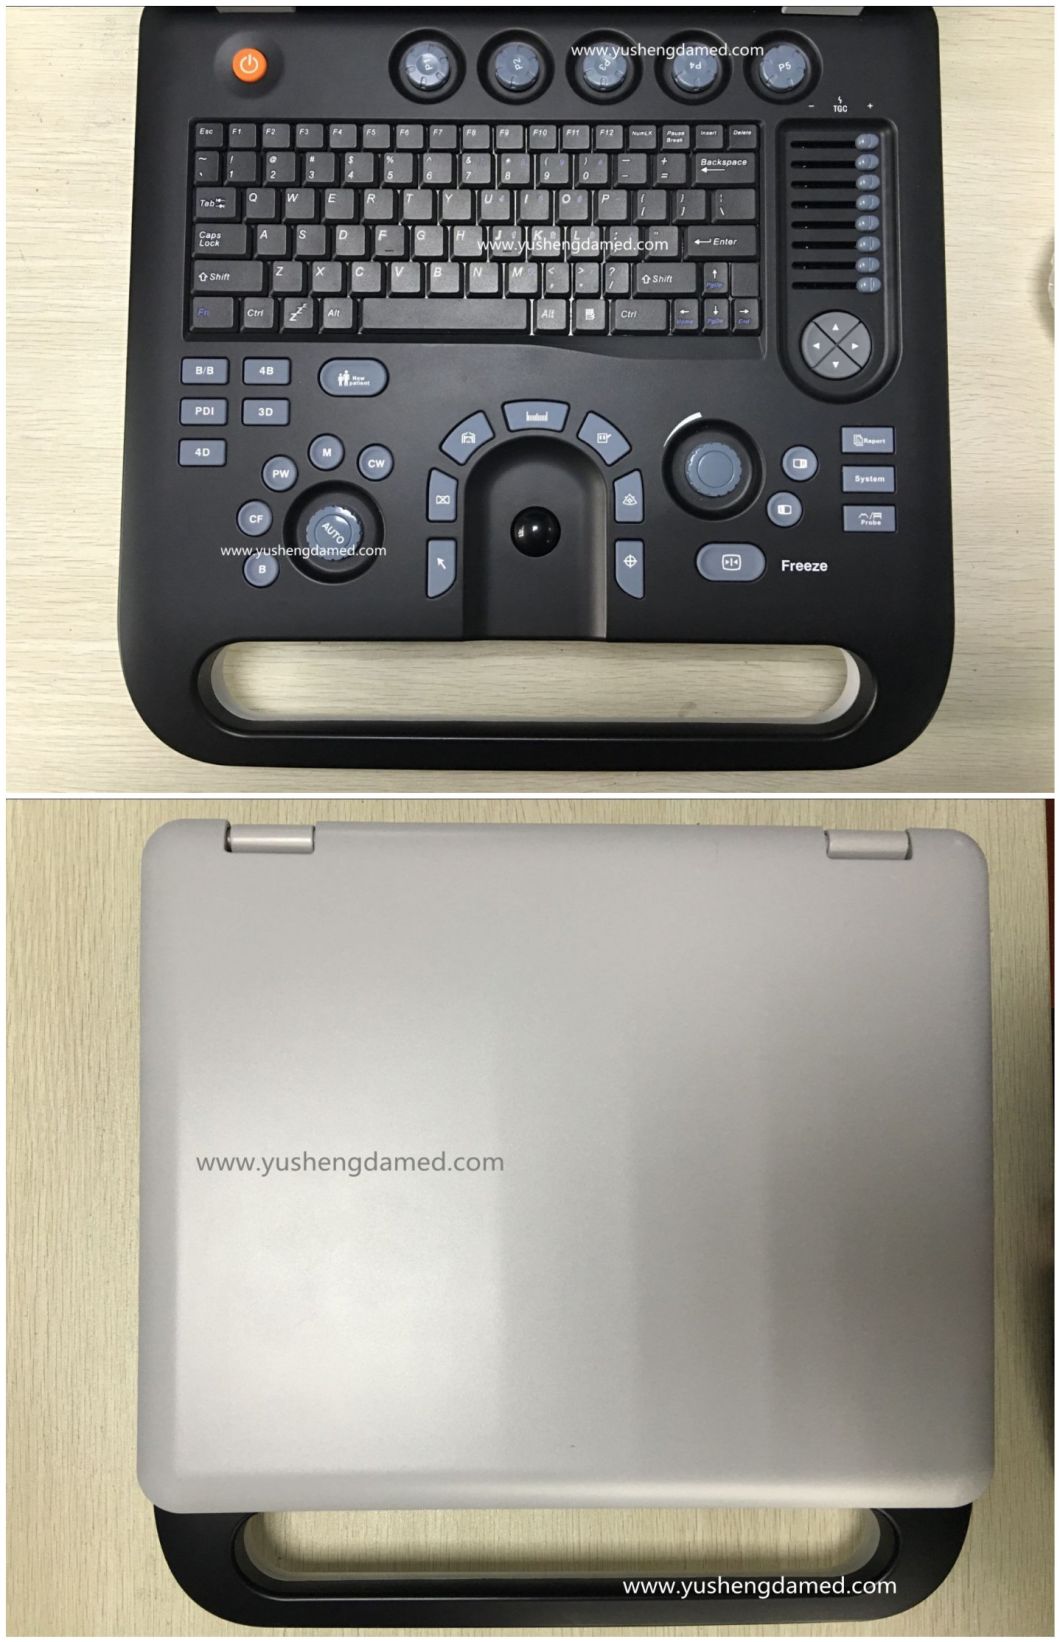 Ce Hospital Medical Equipment Laptop 4D Color Doppler Ultrasound Scanner